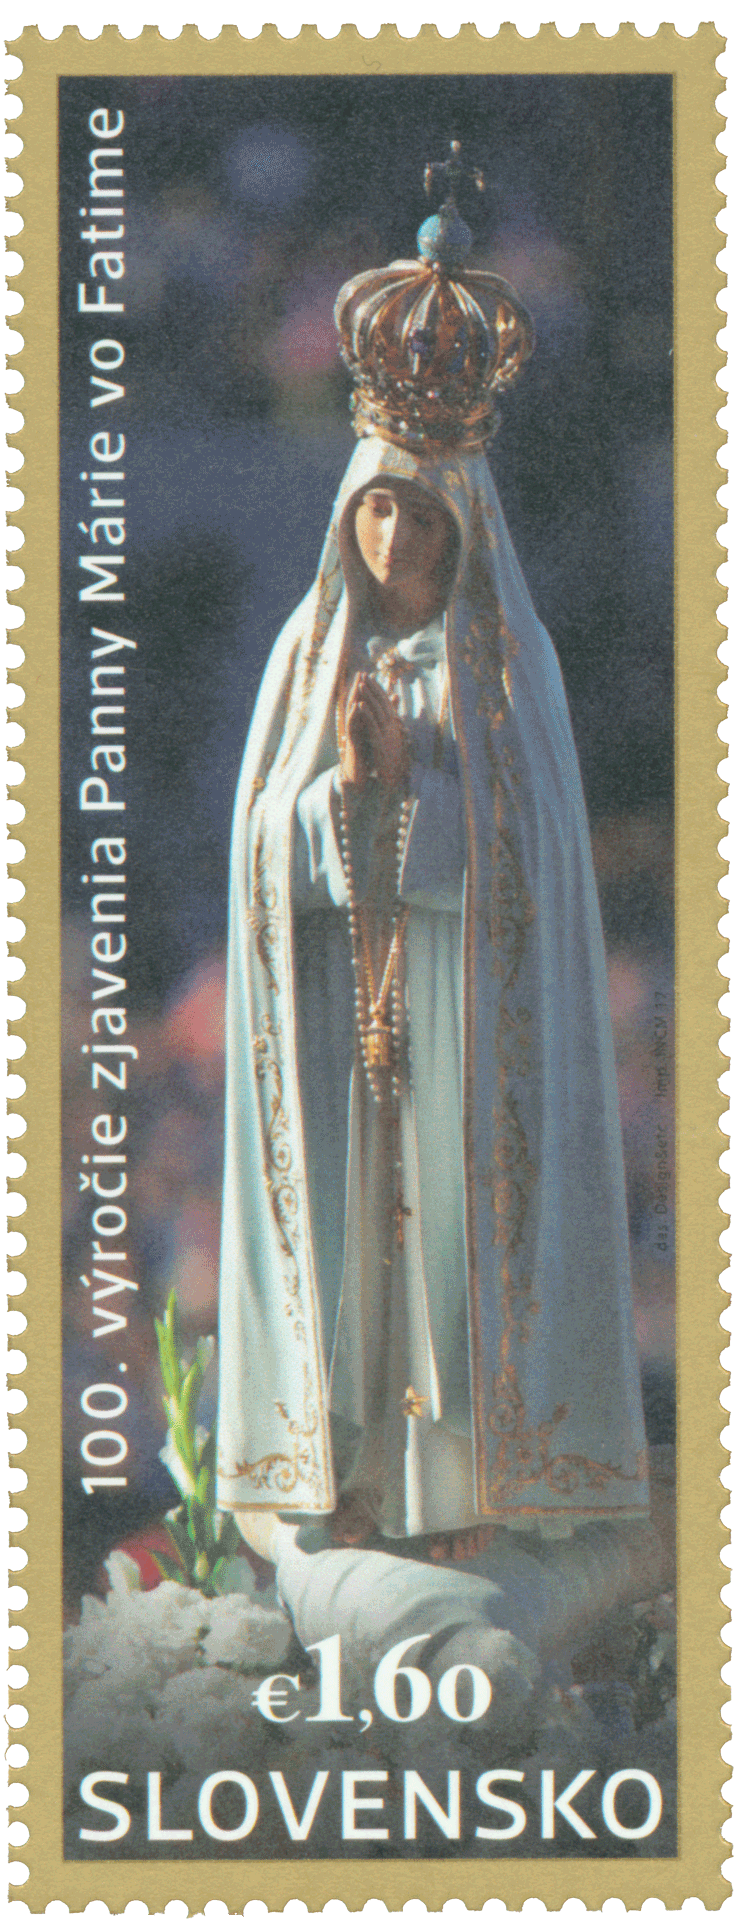 630 - 100. výročie zjavenia Panny Márie vo Fatime: Spoločné vydanie s Portugalskom, Poľskom a Luxemburskom